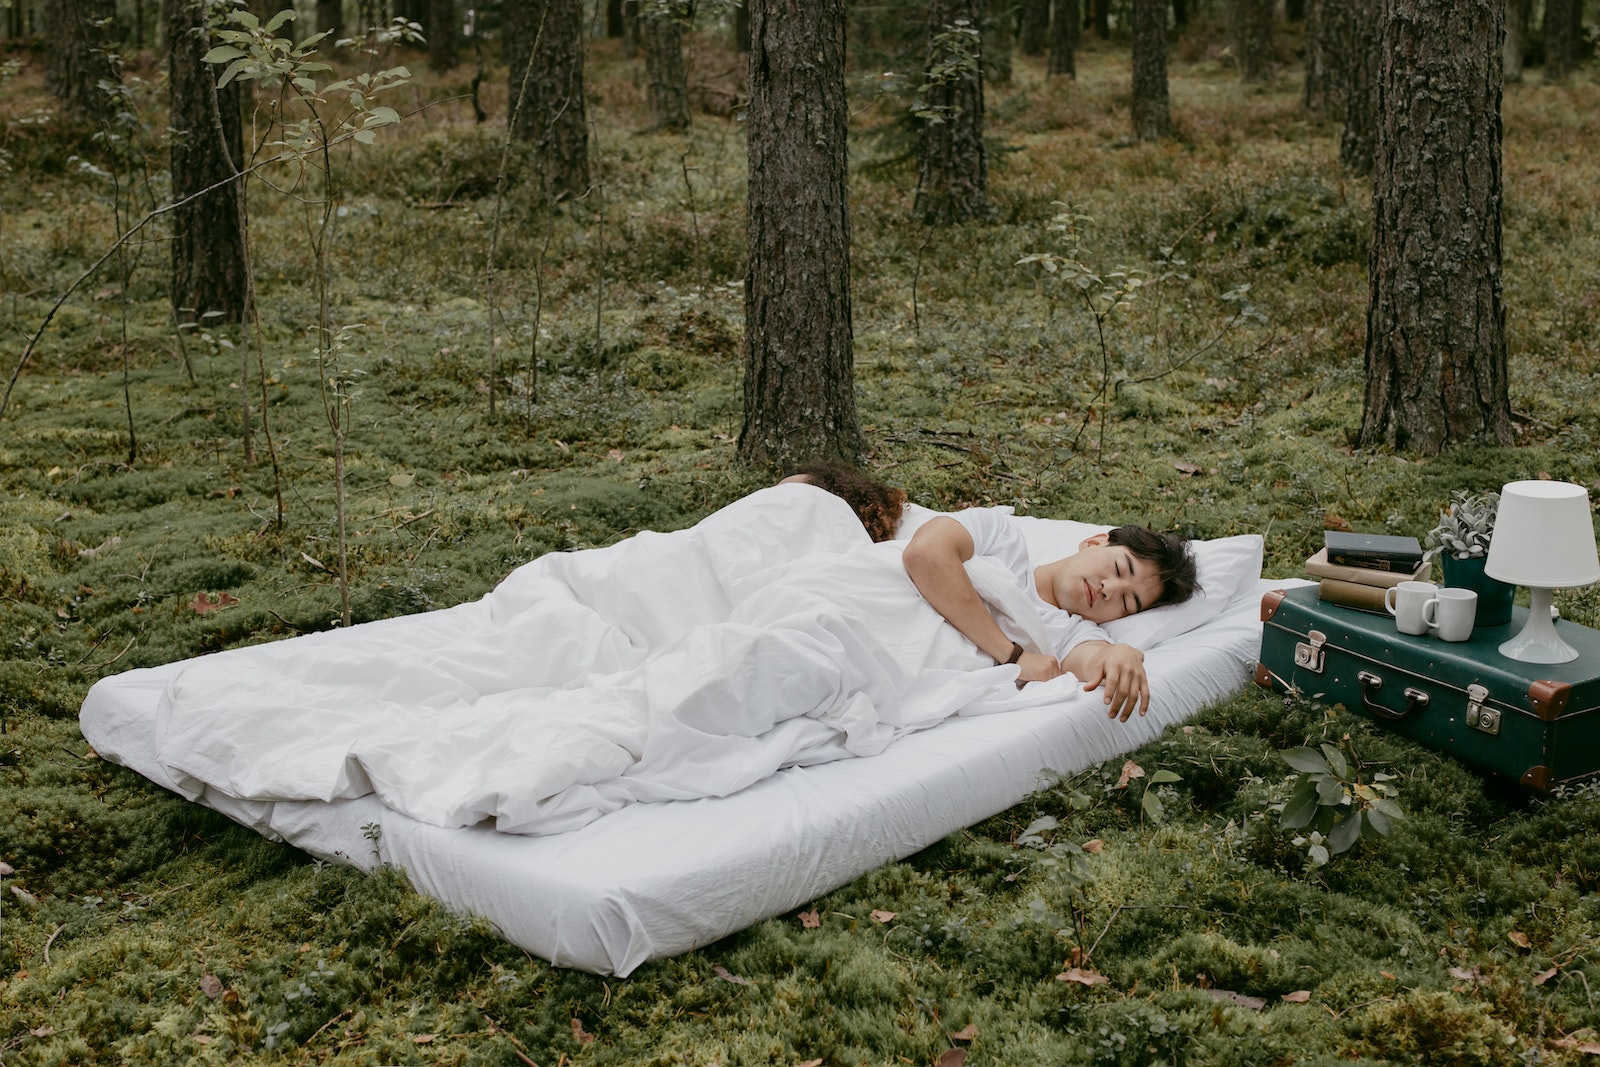 A Couple Sleeping Outdoors over a Mattress